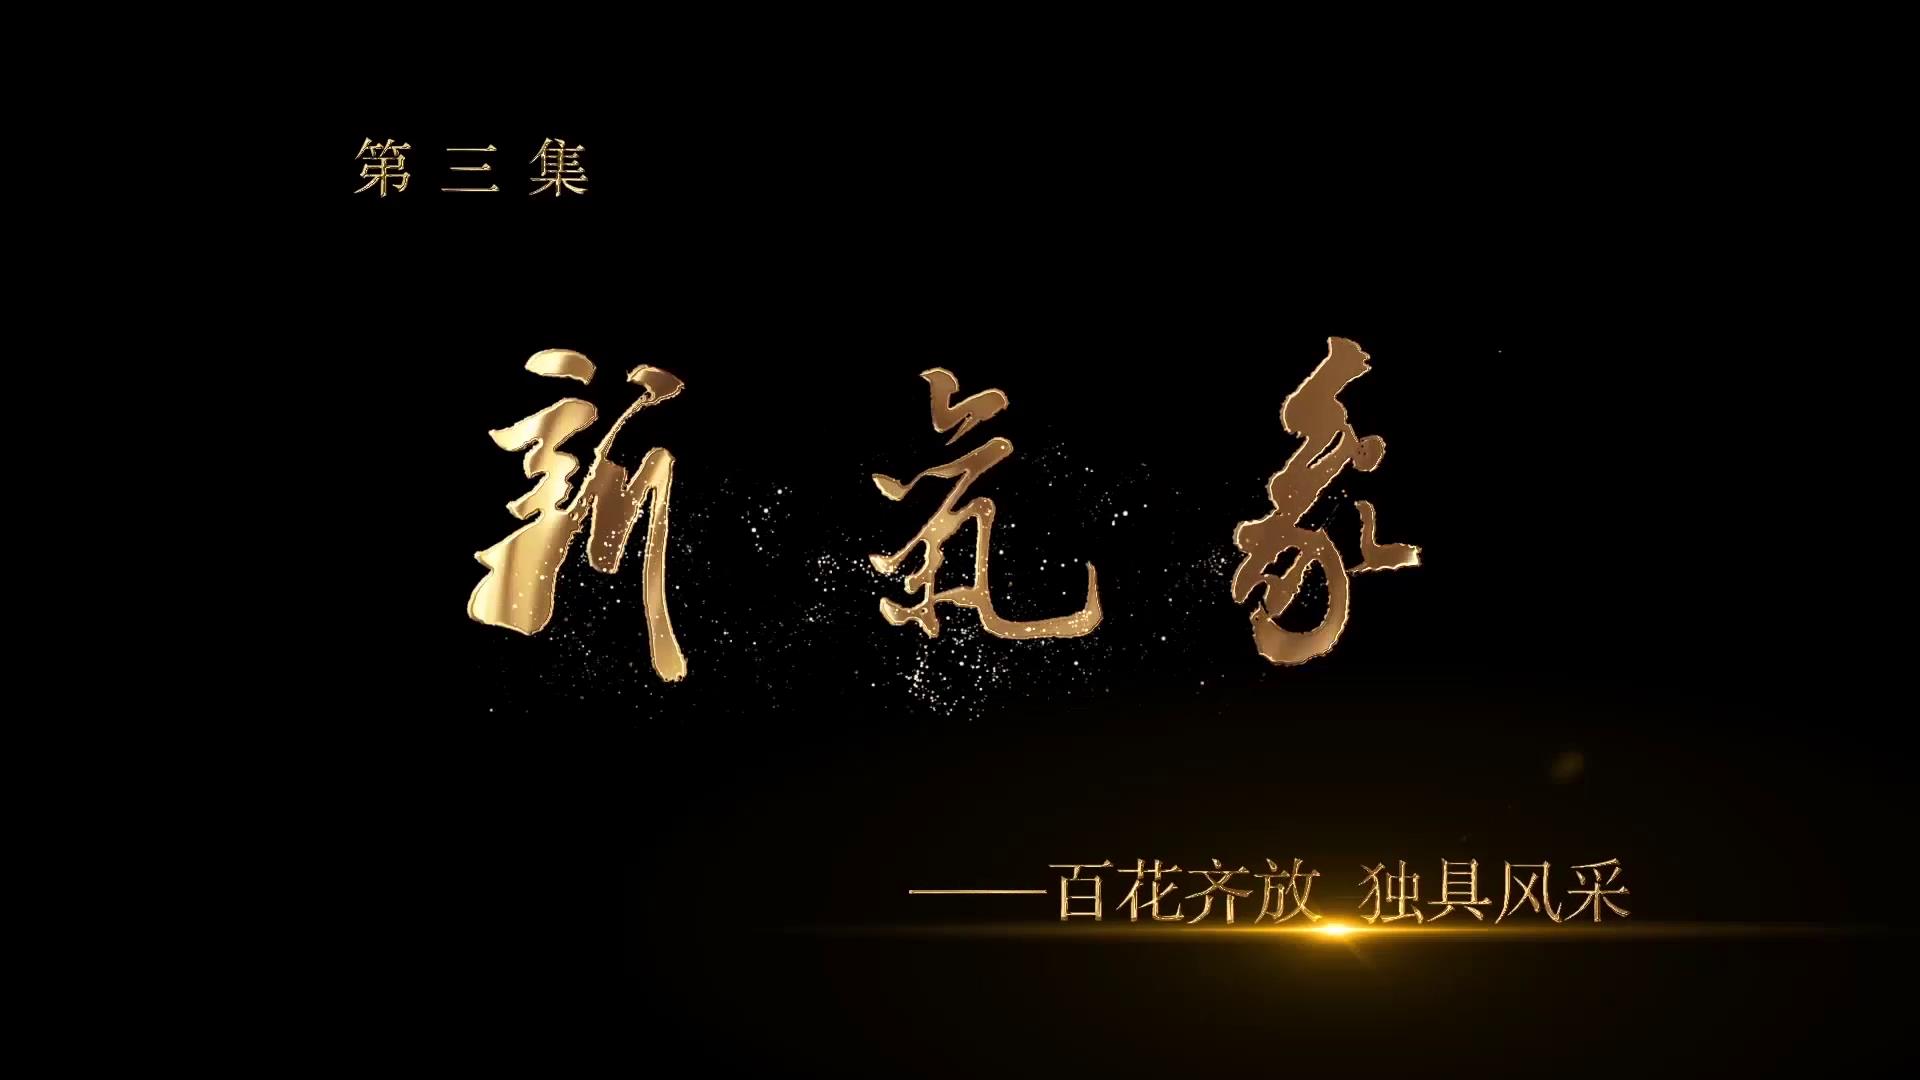 《中国画坛齐鲁风》第三集 新气象——百花齐放·独具风采